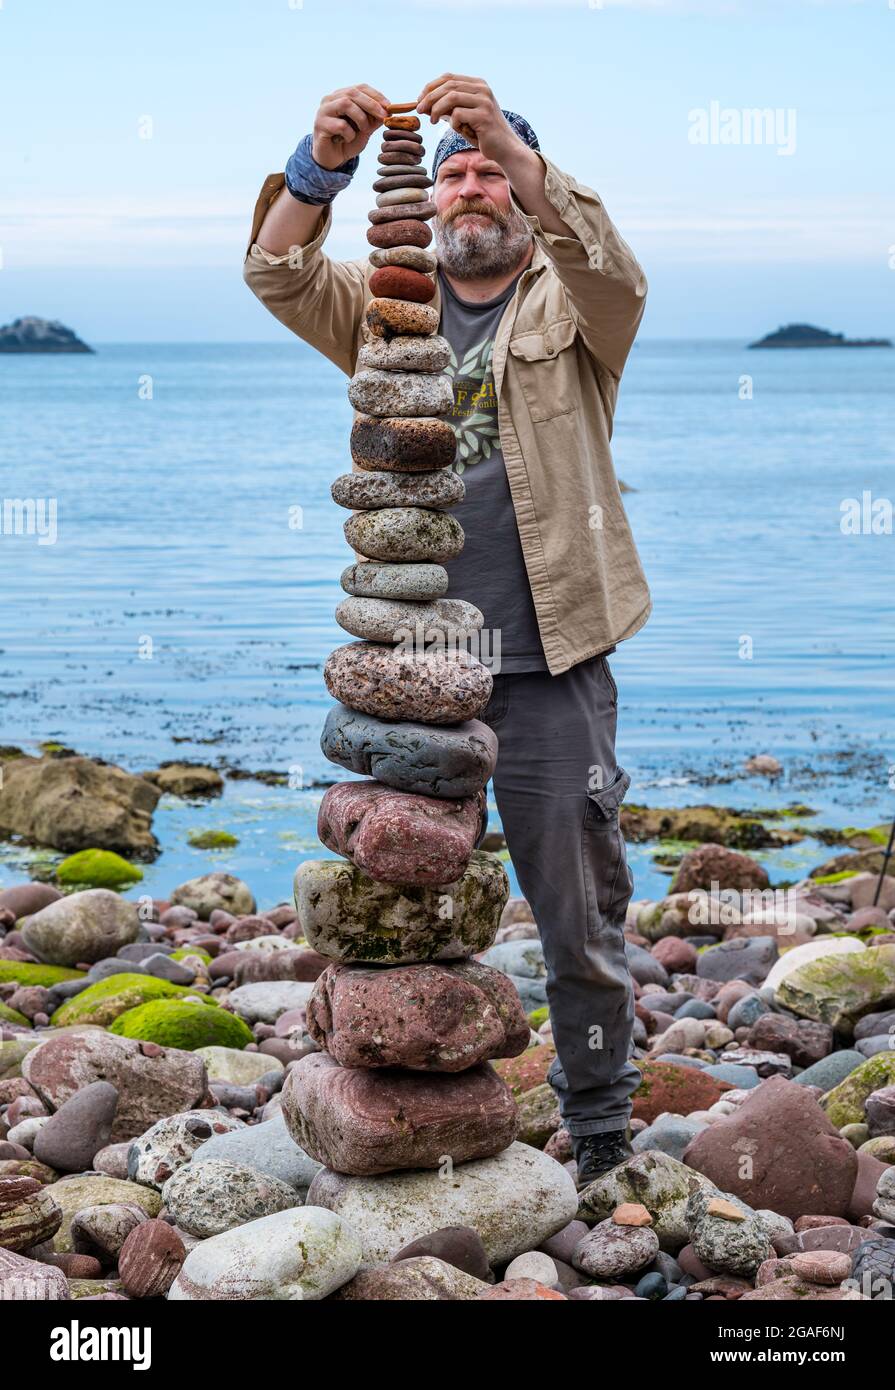 James Brunt, artiste terrestre, empile des pierres dans une tour du championnat européen de pierre sur la plage, Dunbar, East Lothian, Écosse, Royaume-Uni Banque D'Images